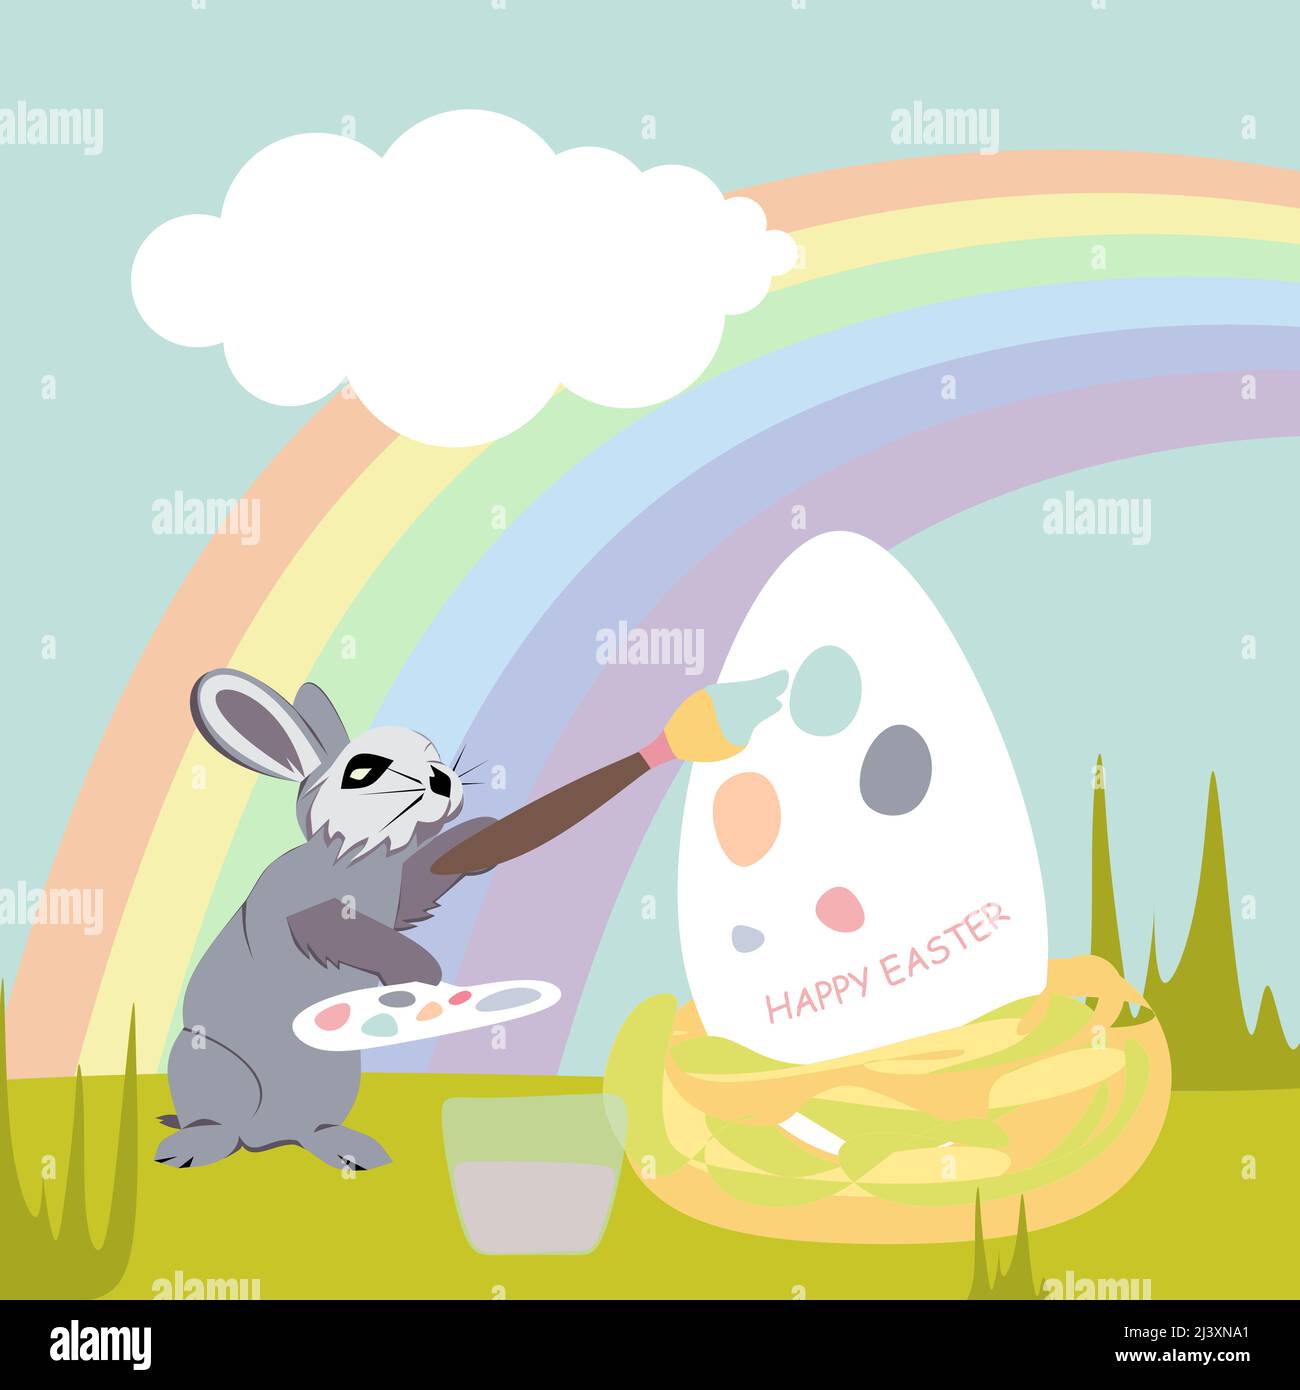 Ein Osterhase malt vor dem Hintergrund von Regenbögen und Wolken ein Asterei mit Pastellfarben. Happy Easter Vektor isoliert niedlichen Illustration in der Vergangenheit Stock Vektor